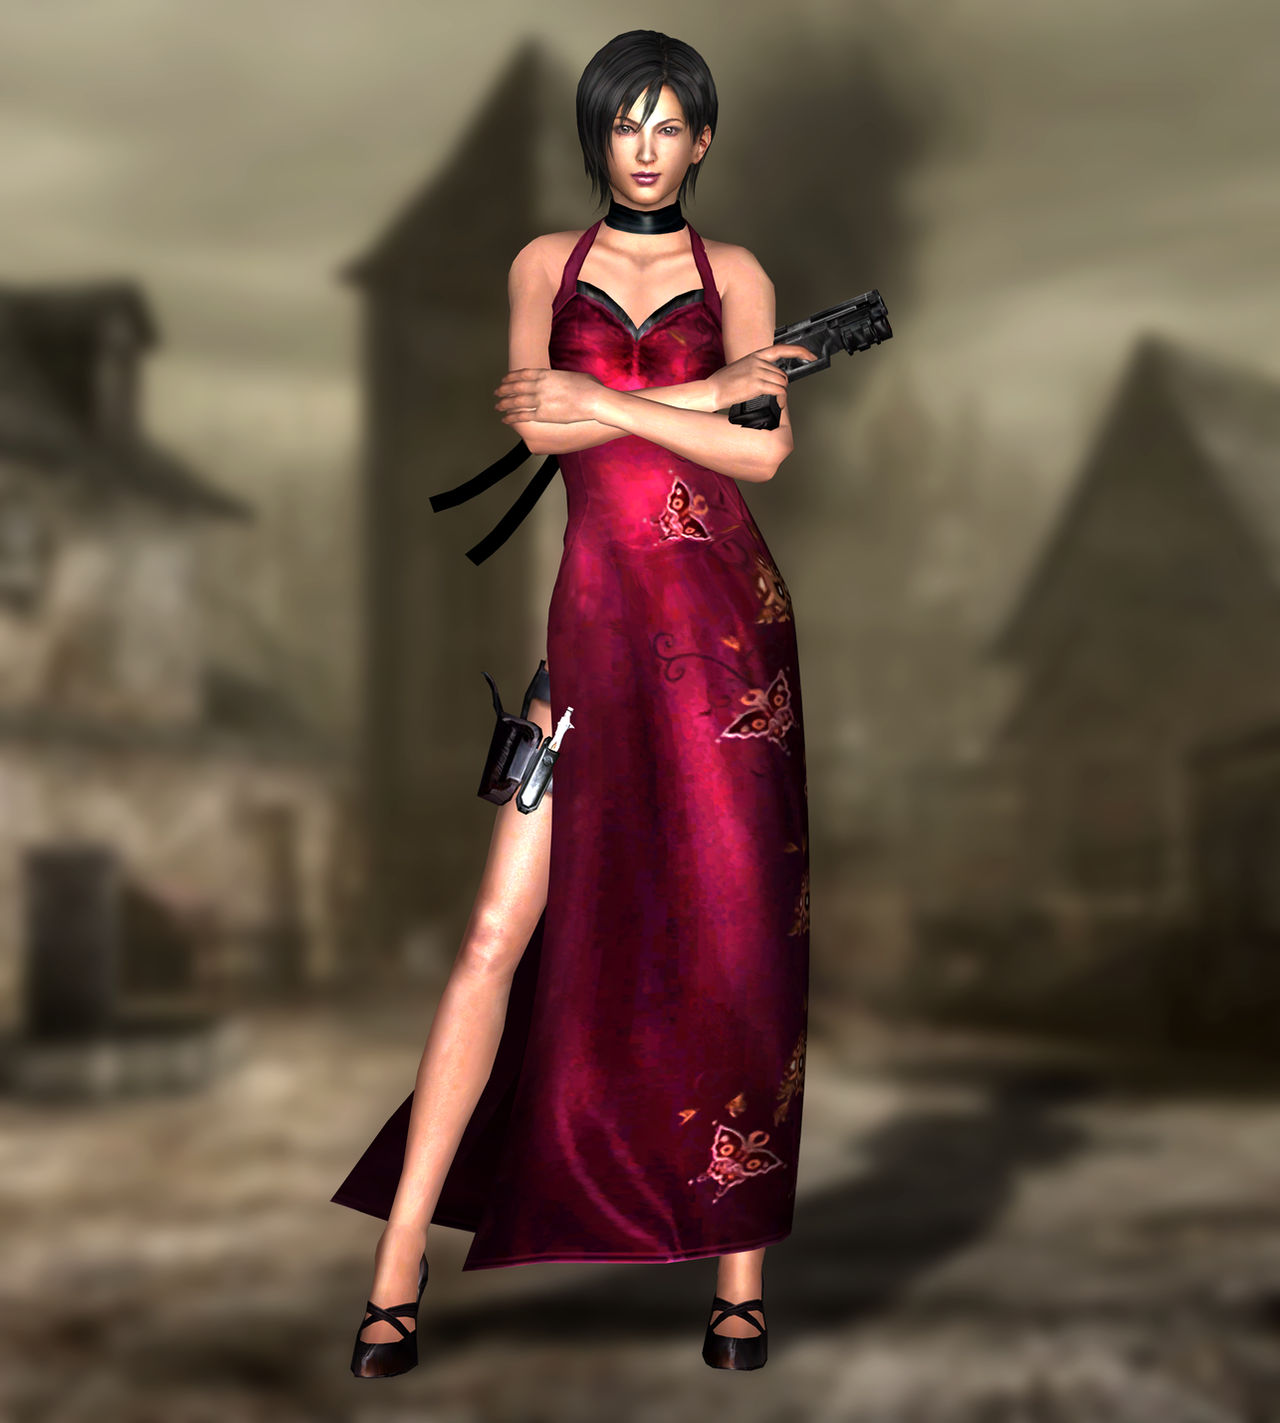 Resident evil red dress - 🧡 Resident Evil 2 Remake Ada Wong Ultra Mini Red...